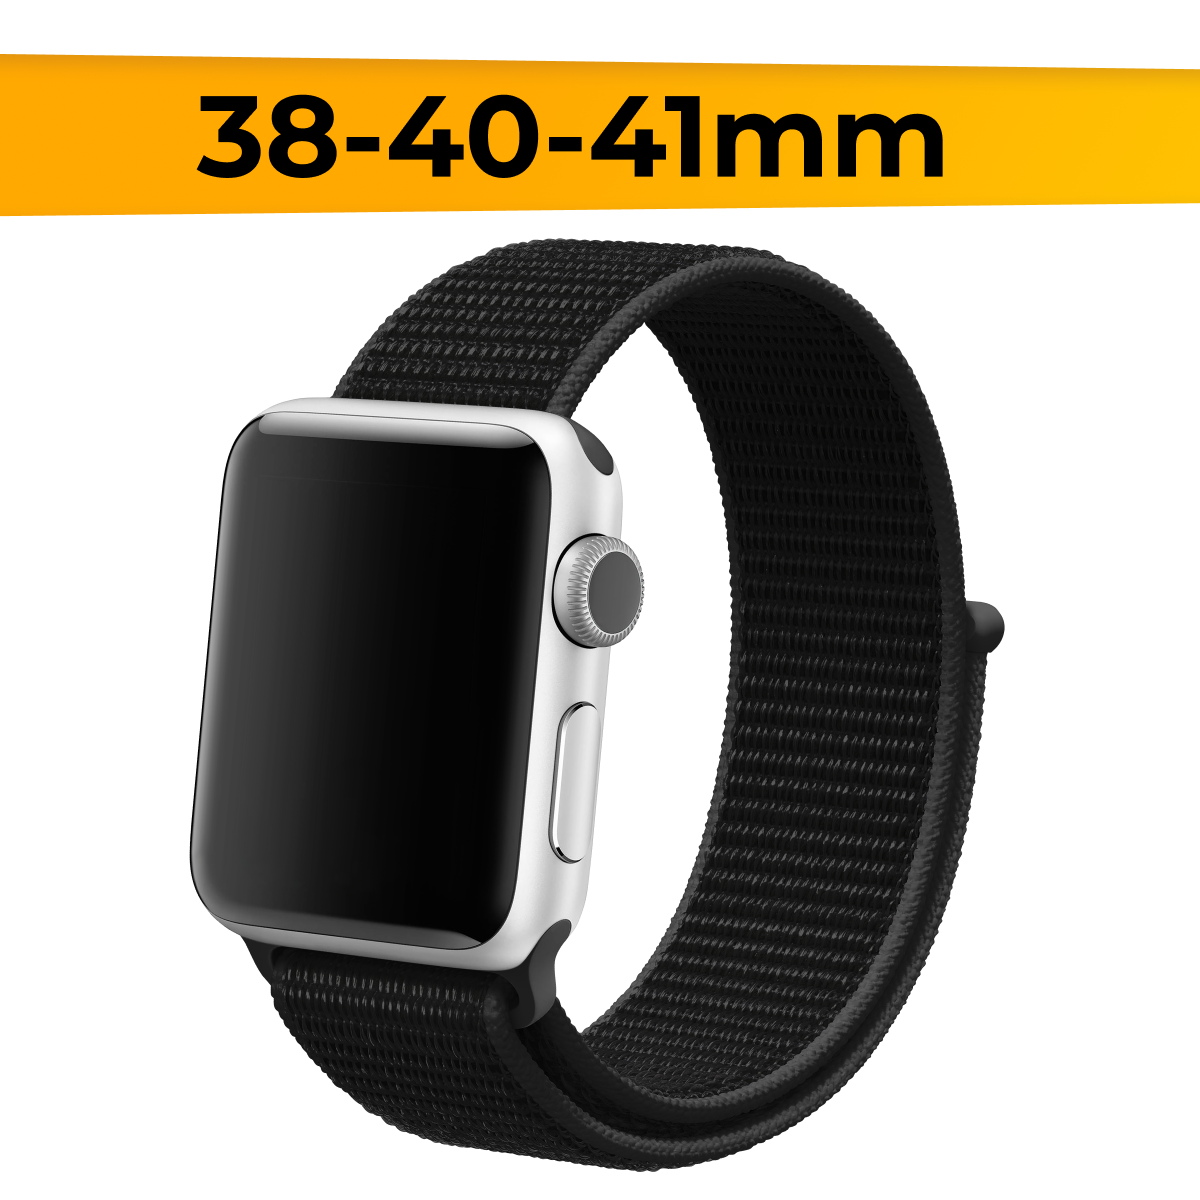 Нейлоновый ремешок для смарт часов Apple Watch 38-40-41mm / Эластичный браслет для Эпл Вотч 1-9 и SE / Сменный тканевый ремешок на липучке / Черный